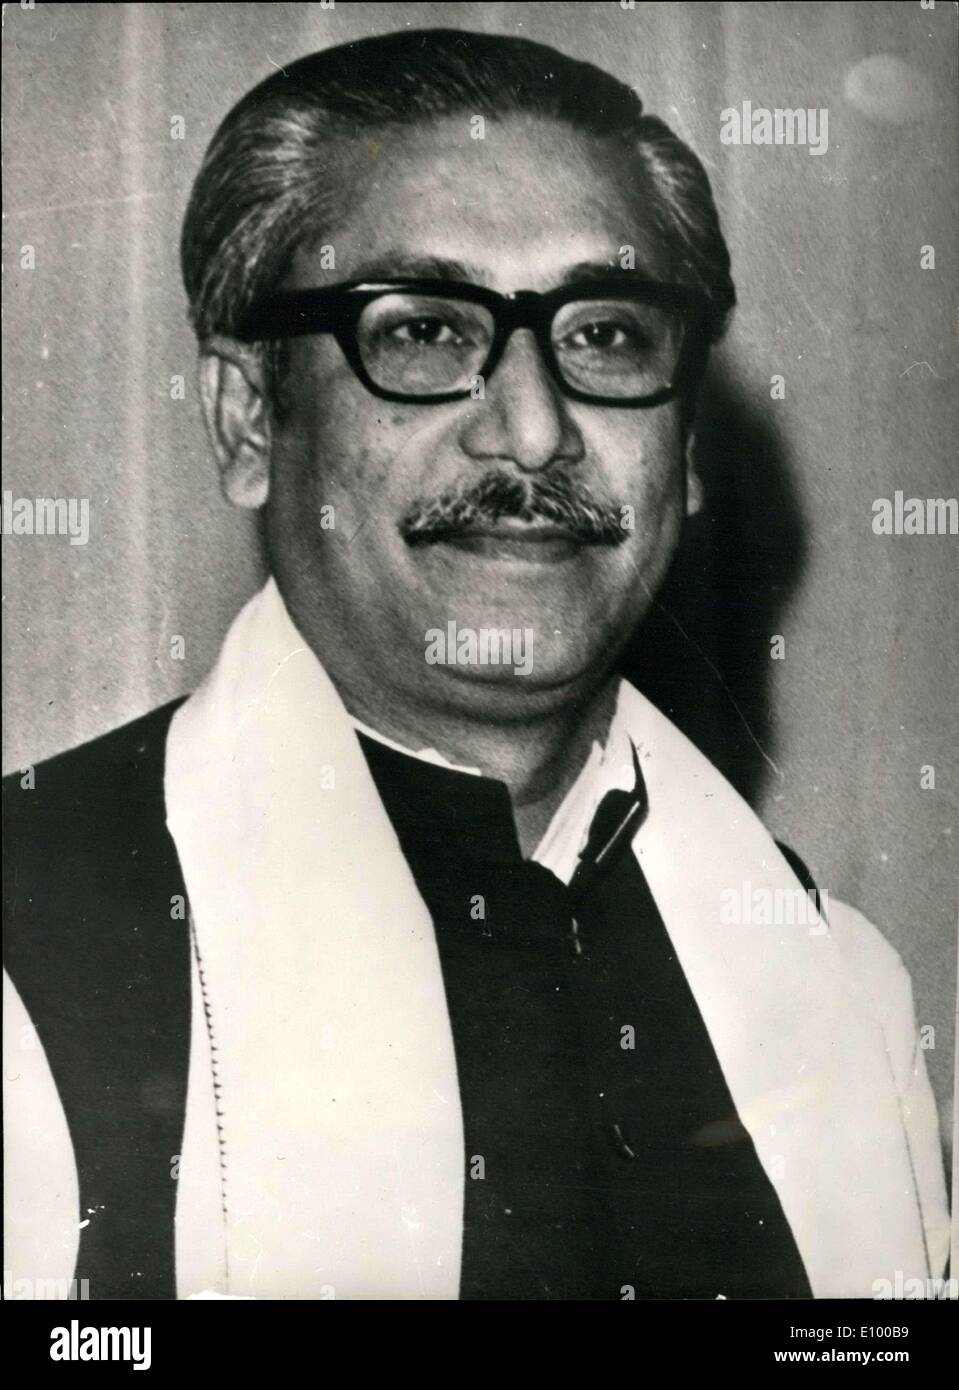 Janv. 05, 1972 - Le Bangladesh Leader - Cheikh Mujibur Rahman. La photo montre le Cheikh Mujubur Rahman, le Bangladesh chef, qui devrait être libérés sans condition, par le Président Bhutto. Banque D'Images